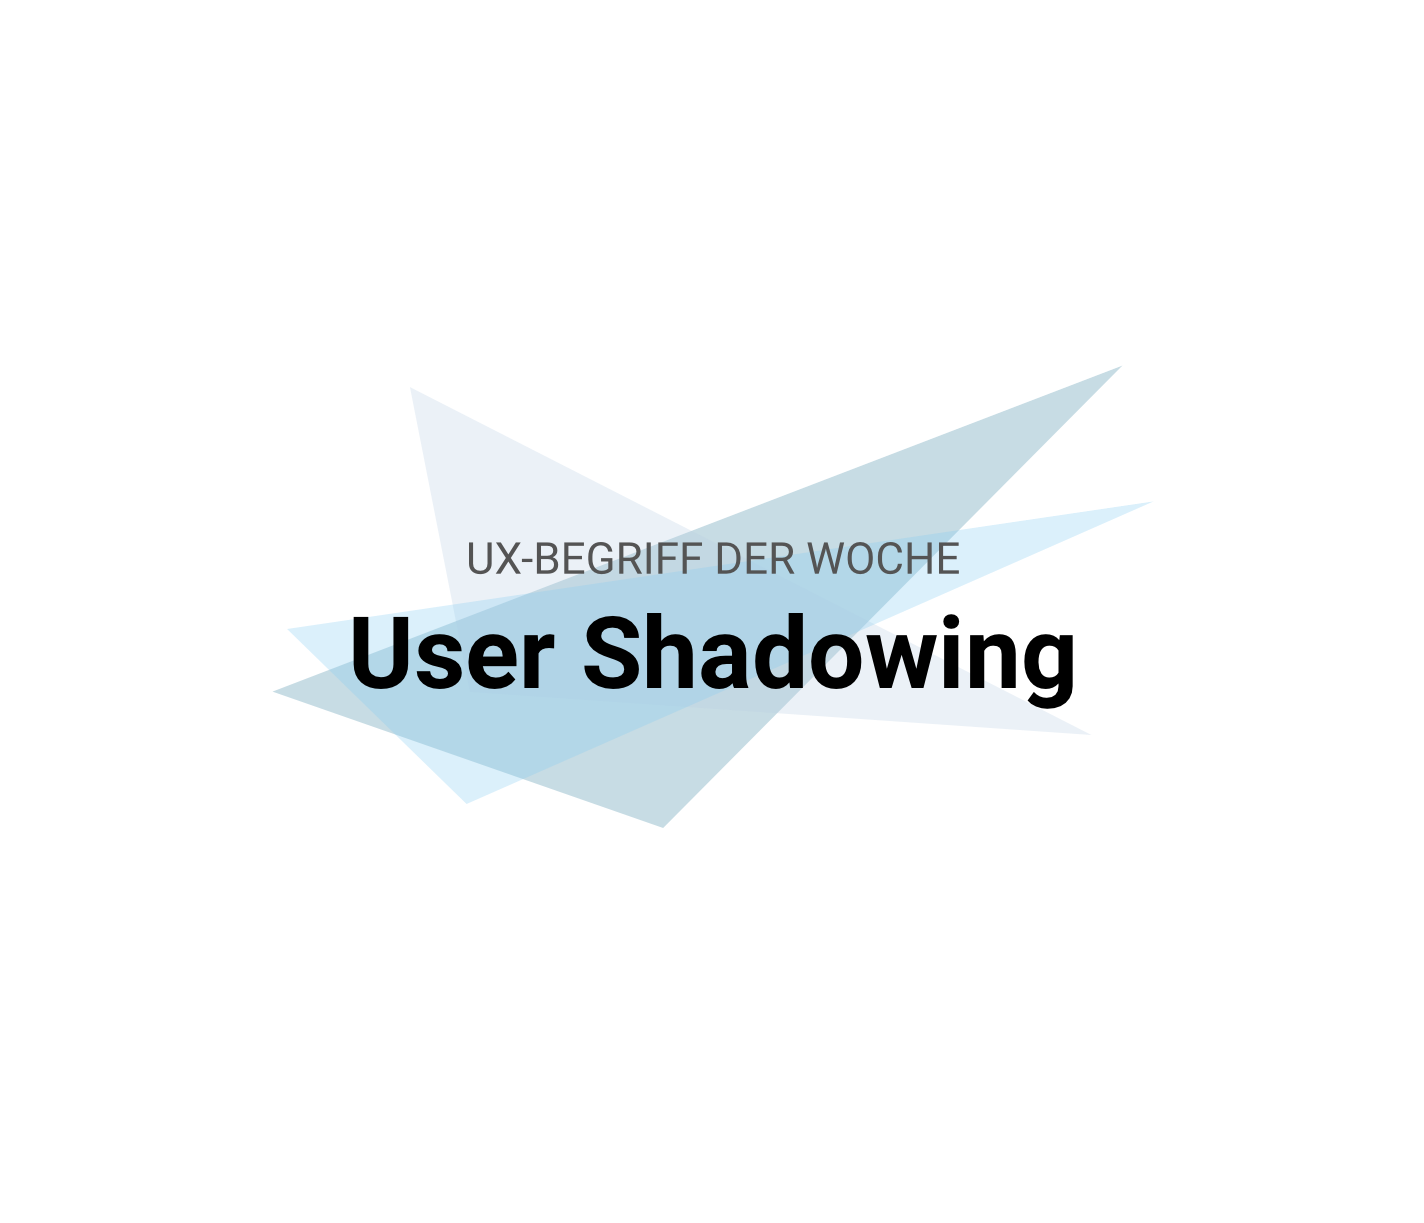 UX-Begriffe kurz erklärt: "User Shadowing"